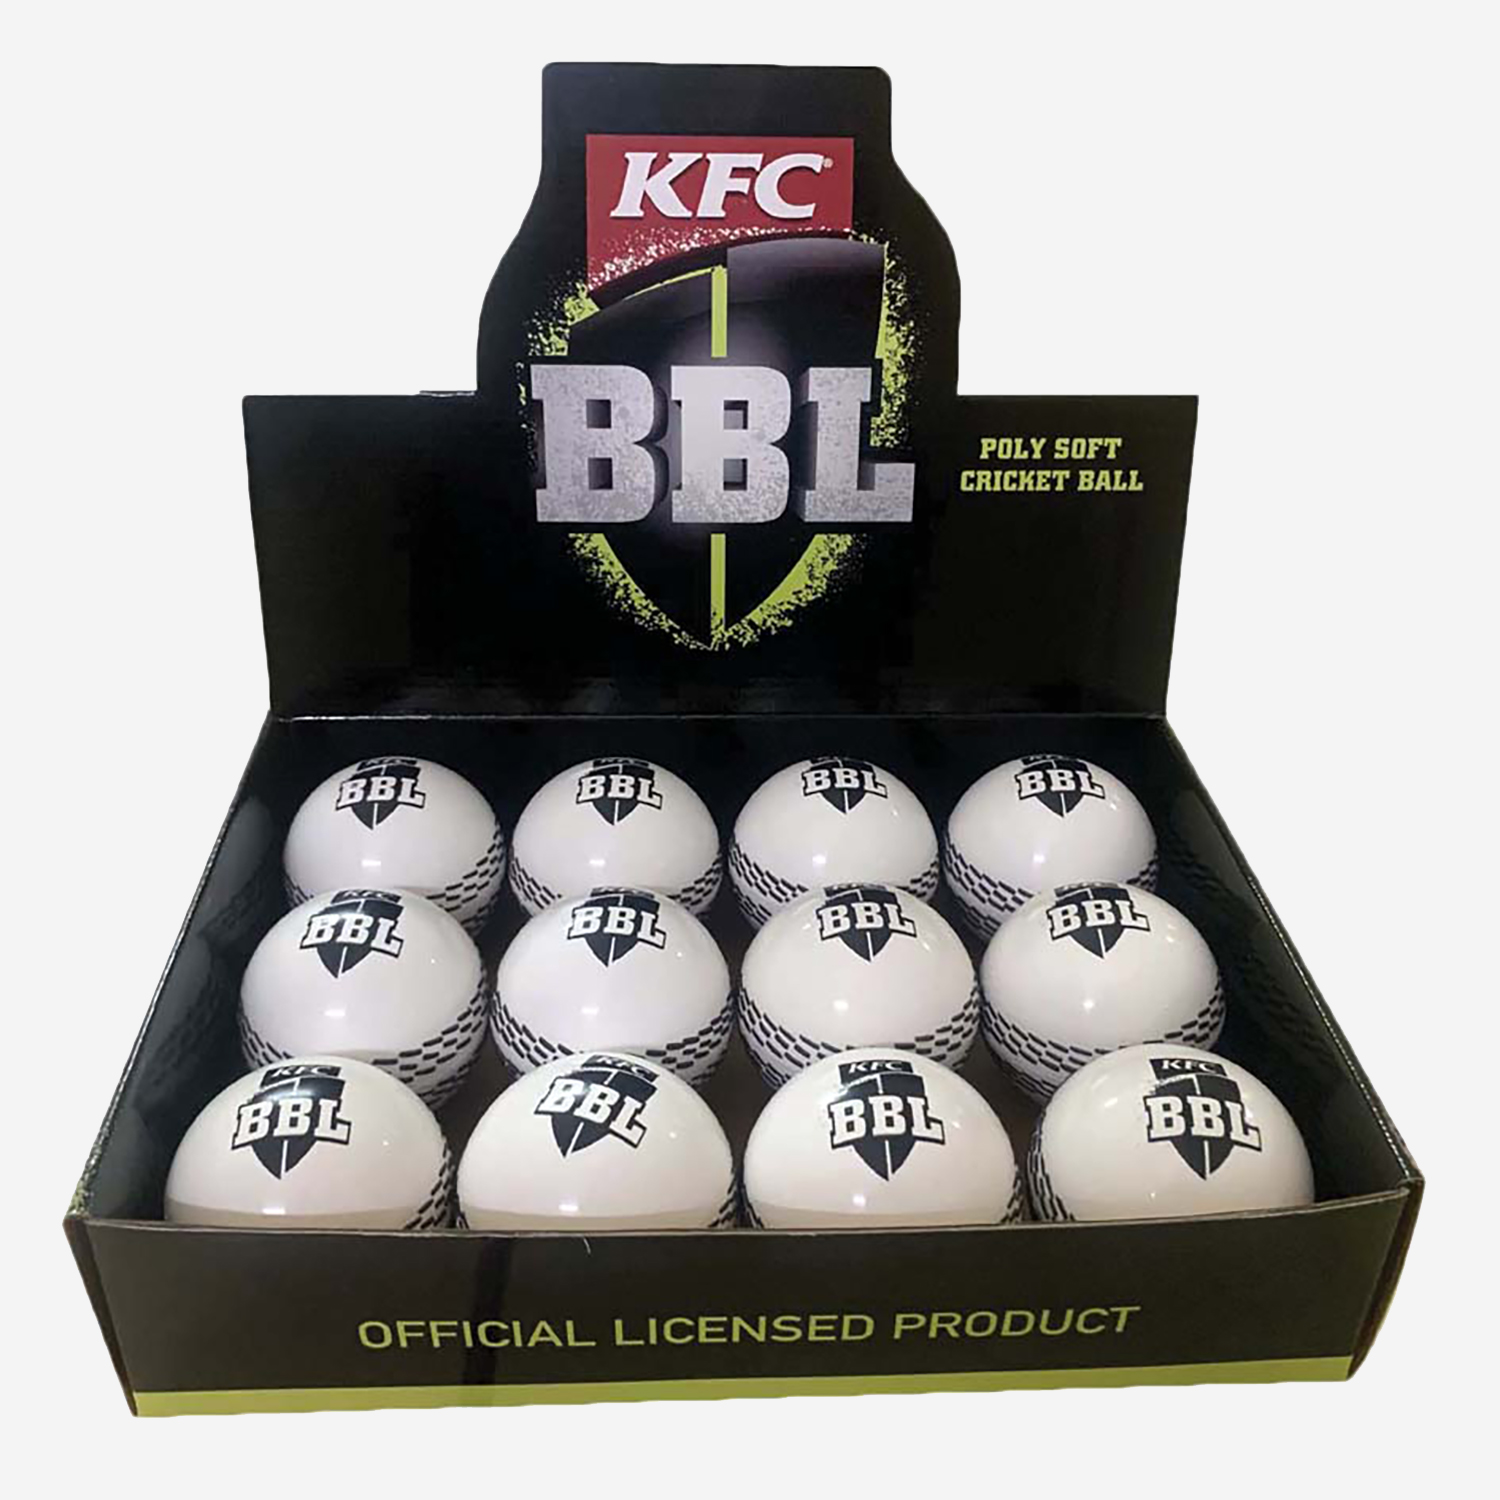 BBL Soft Cricket Ball